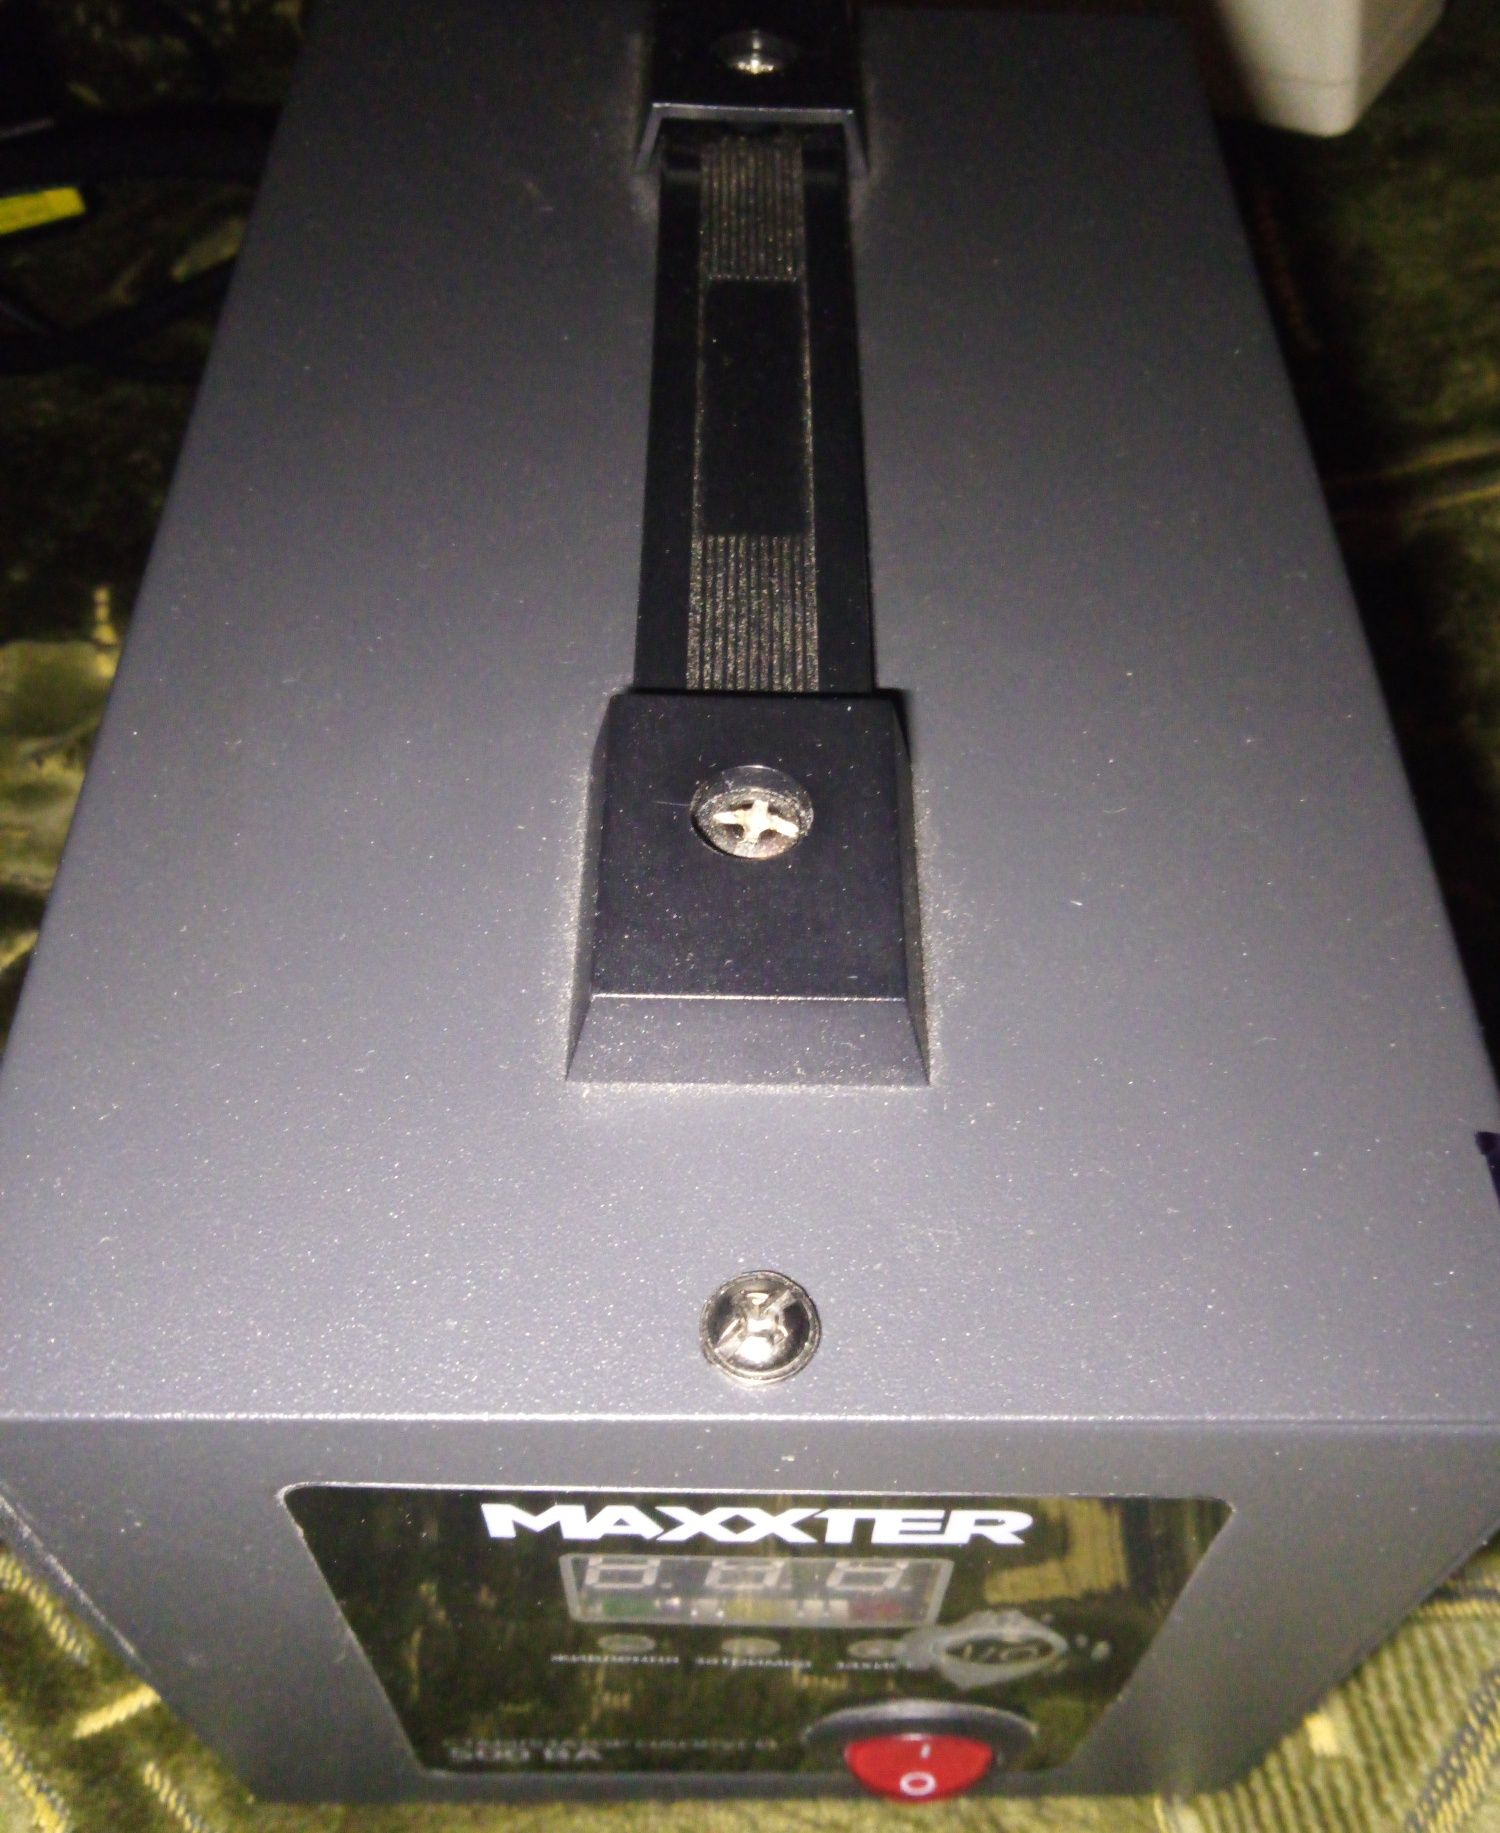 Стабилизатор напряжения Maxxter 
500ВА  или 300Вт  
Предназначен для з